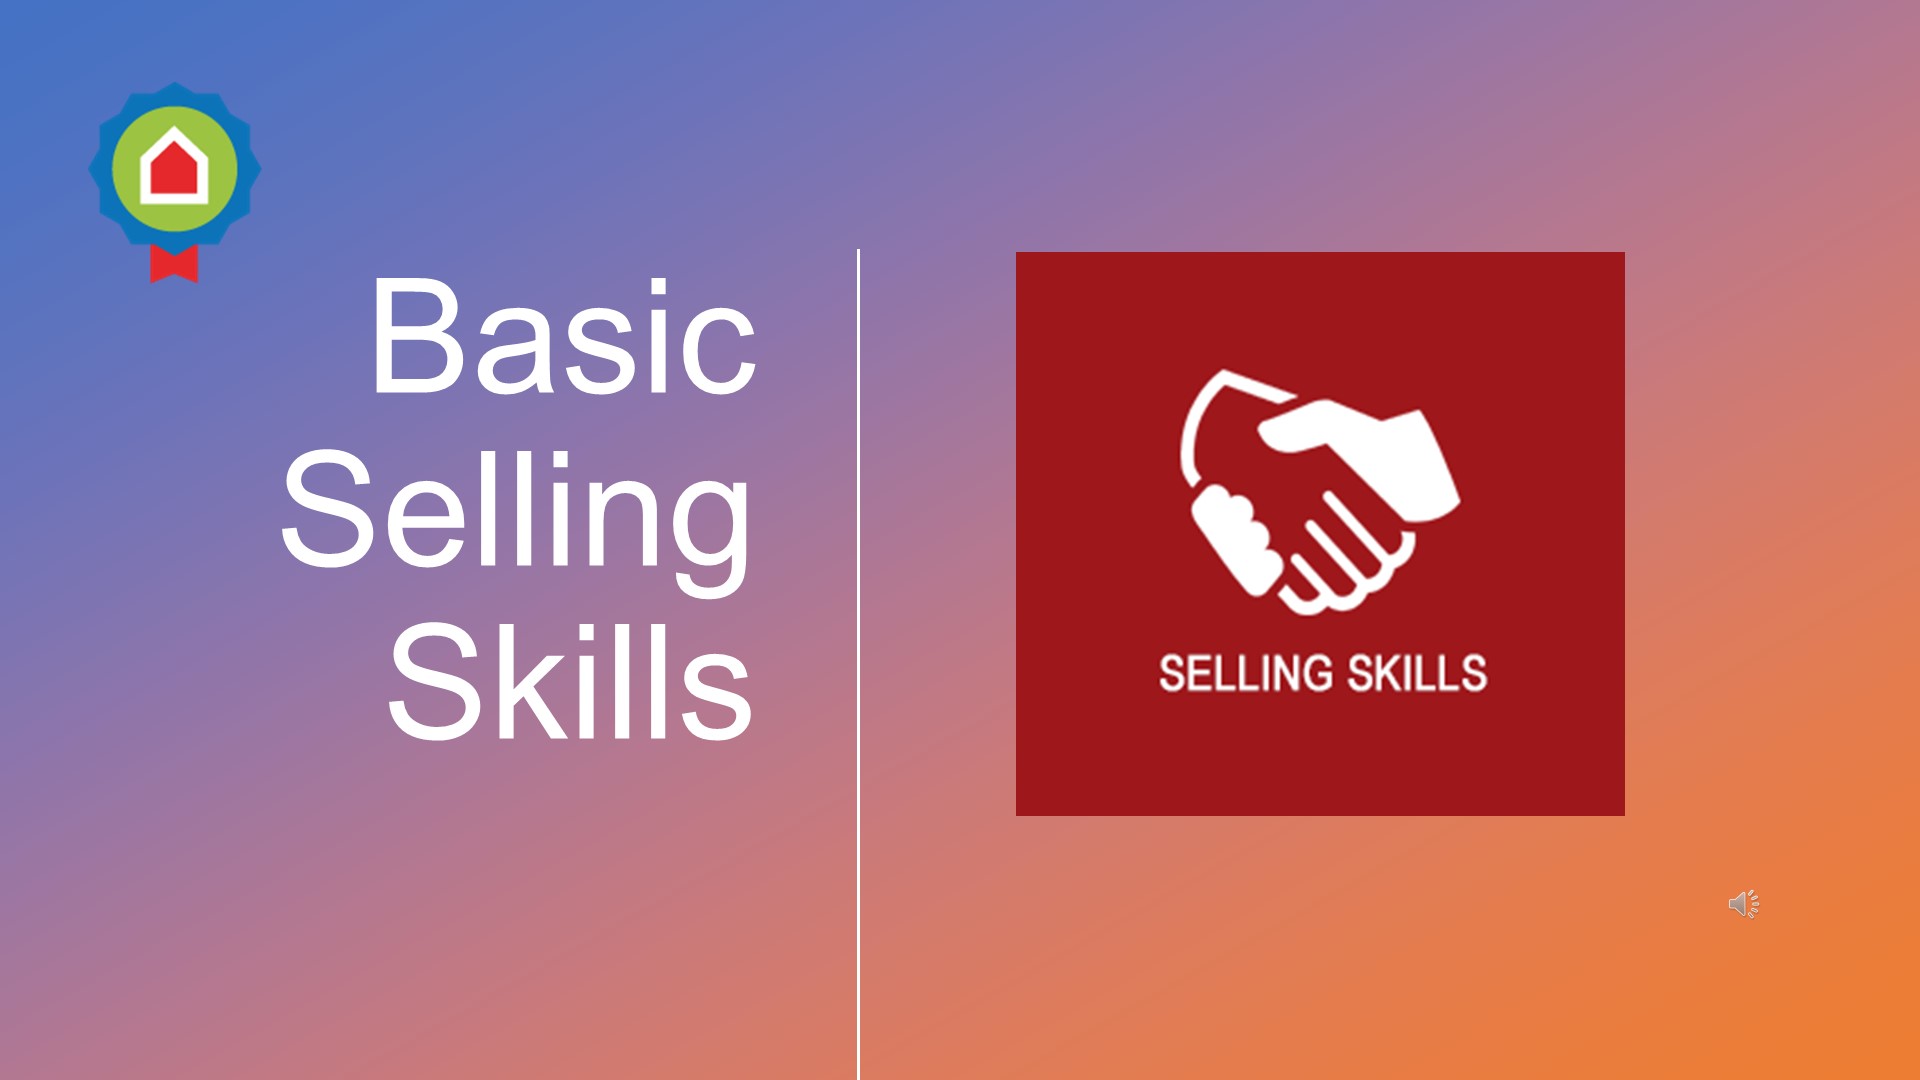 Basic Selling Skills مهارات البيع الأساسية، التعلم الذاتي  - انجليزي